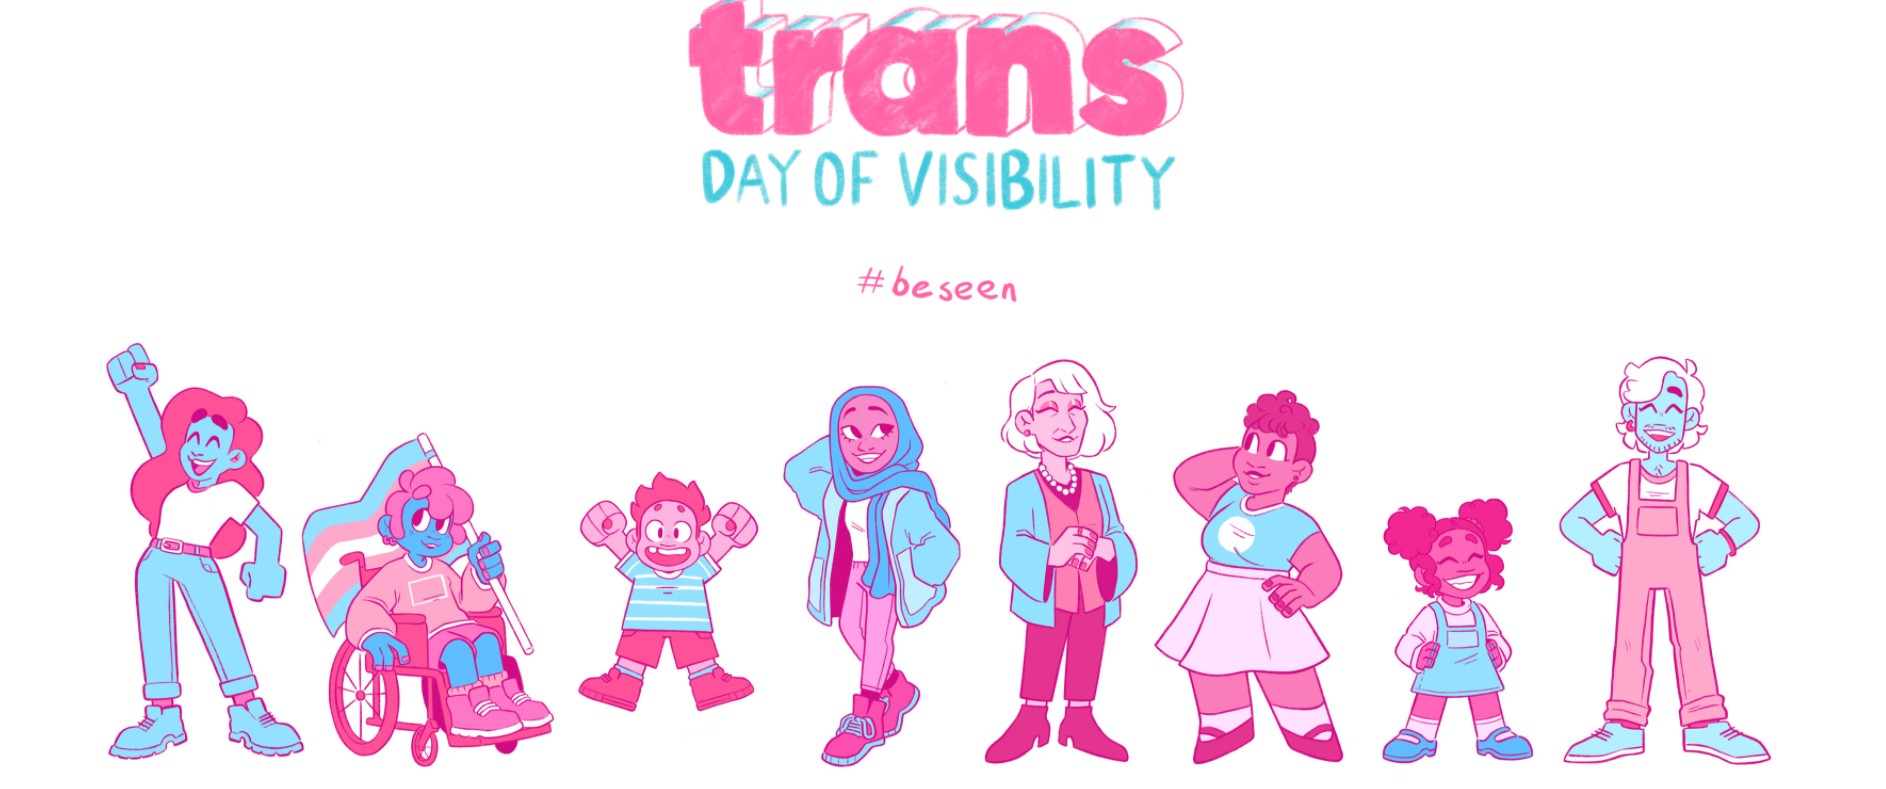 31 Mart Uluslararası Trans Görünürlük Günü kutlu olsun! | Kaos GL - LGBTİ+ Haber Portalı